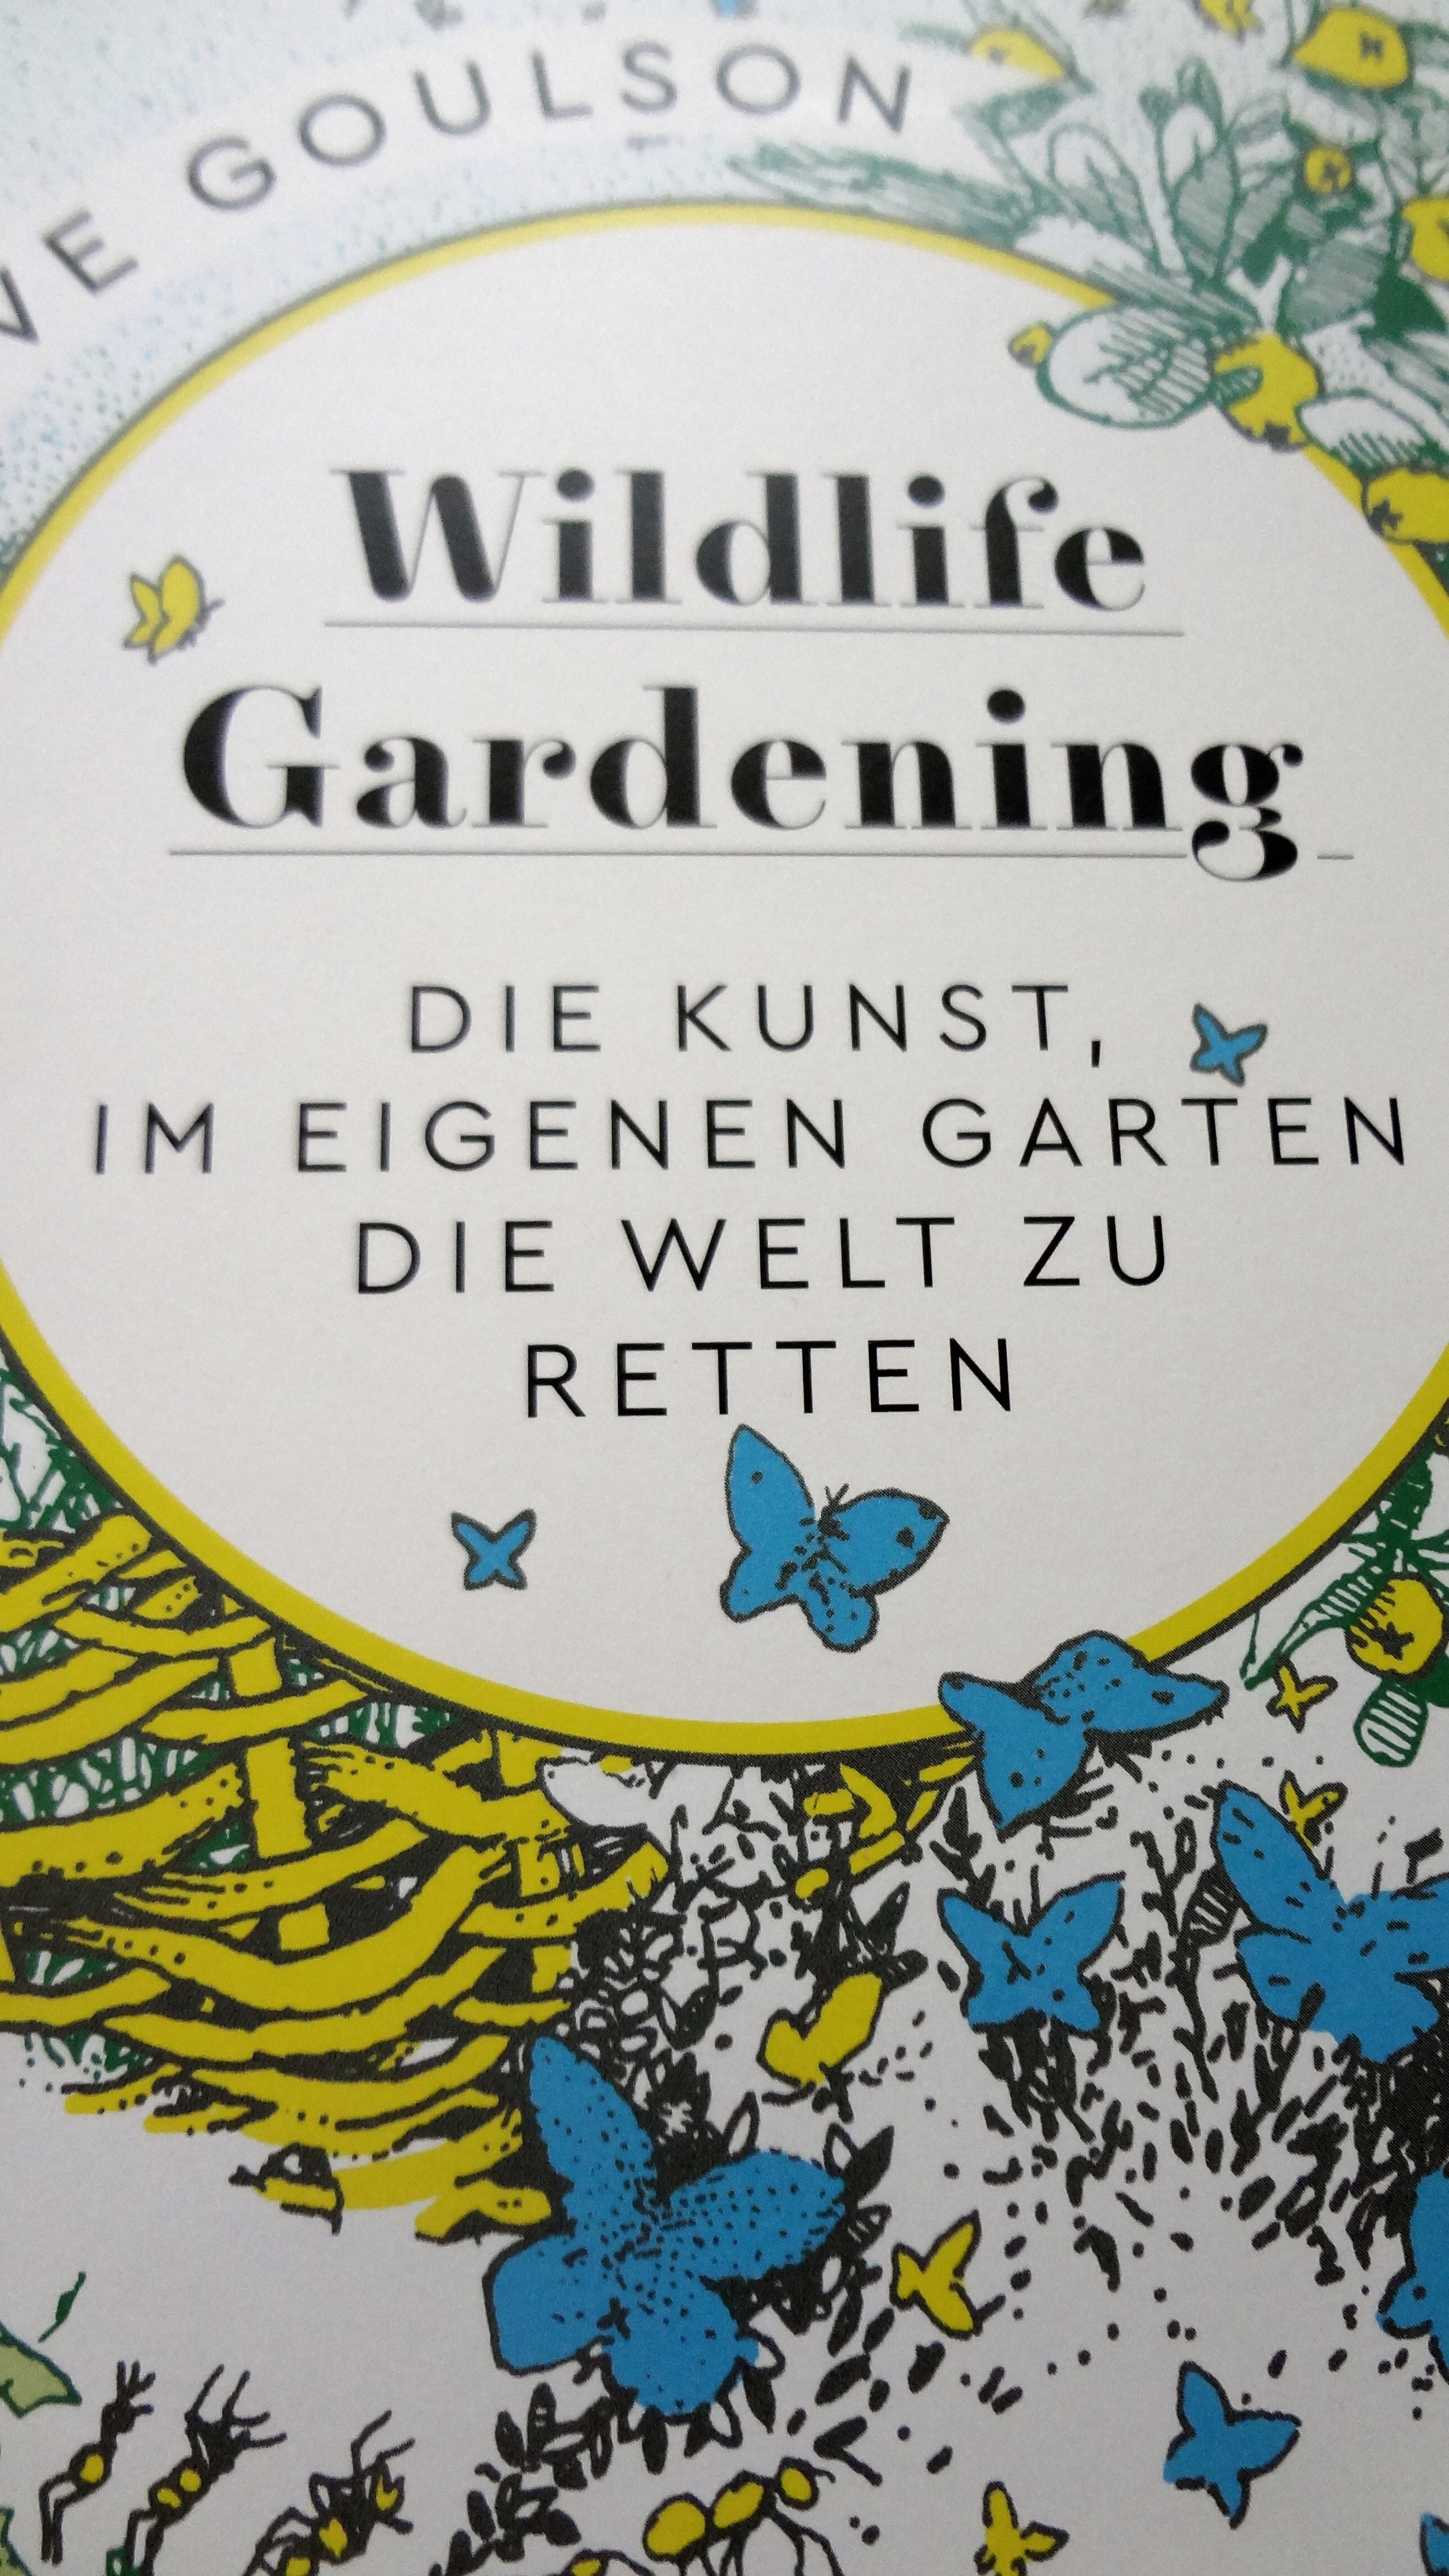 Wildlife Gardening – Buchbesprechung